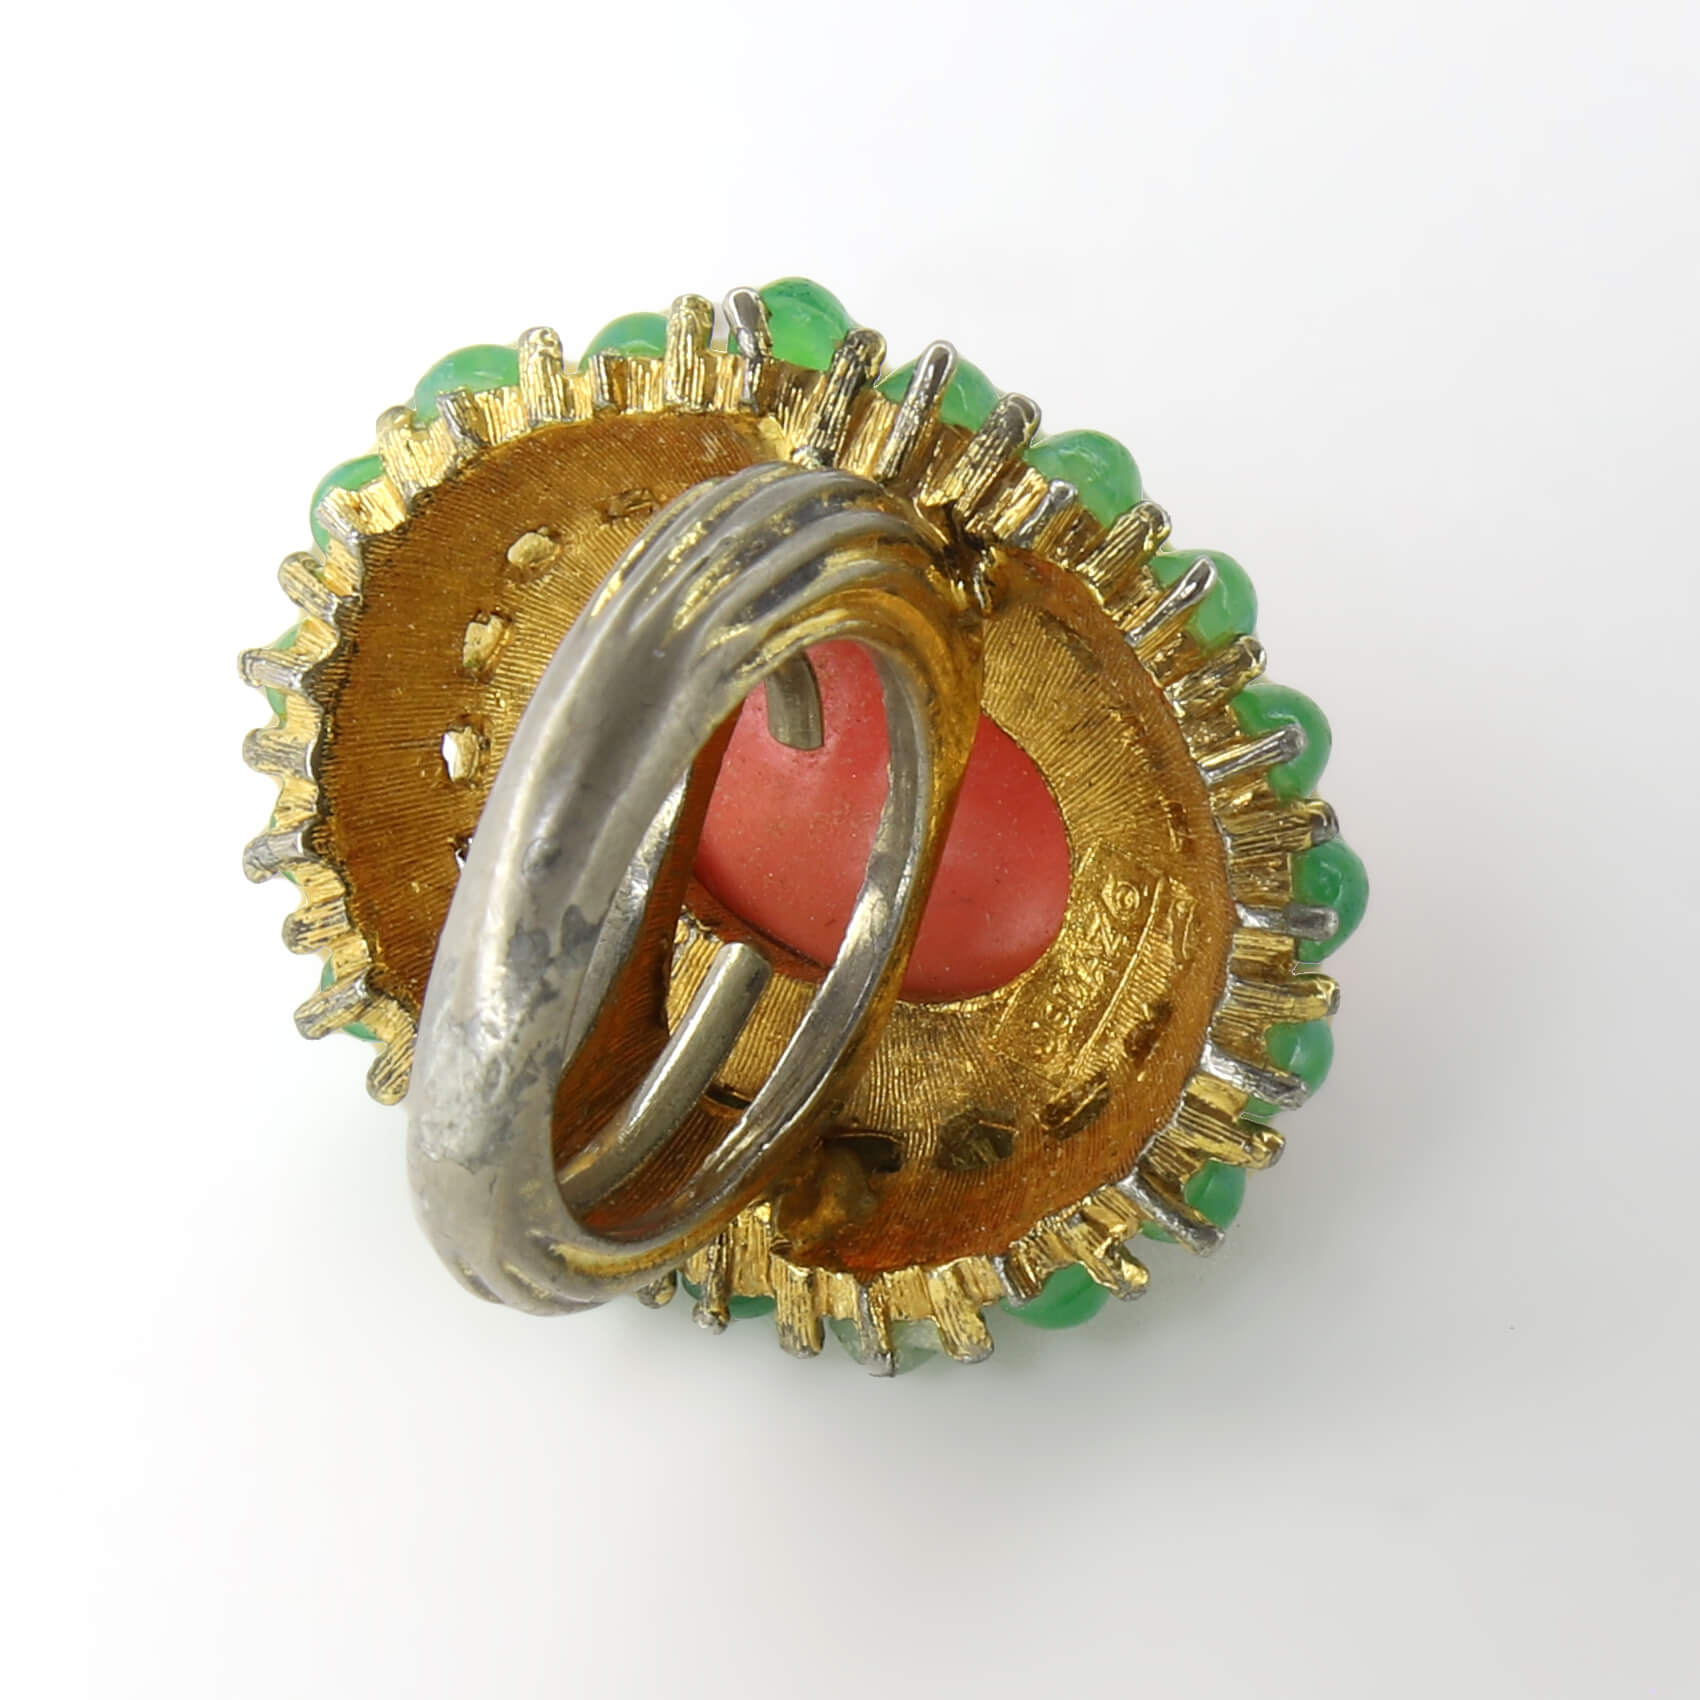 Винтажное кольцо Jomaz размер 15,5-17,5, цвет Зеленый, фото 2